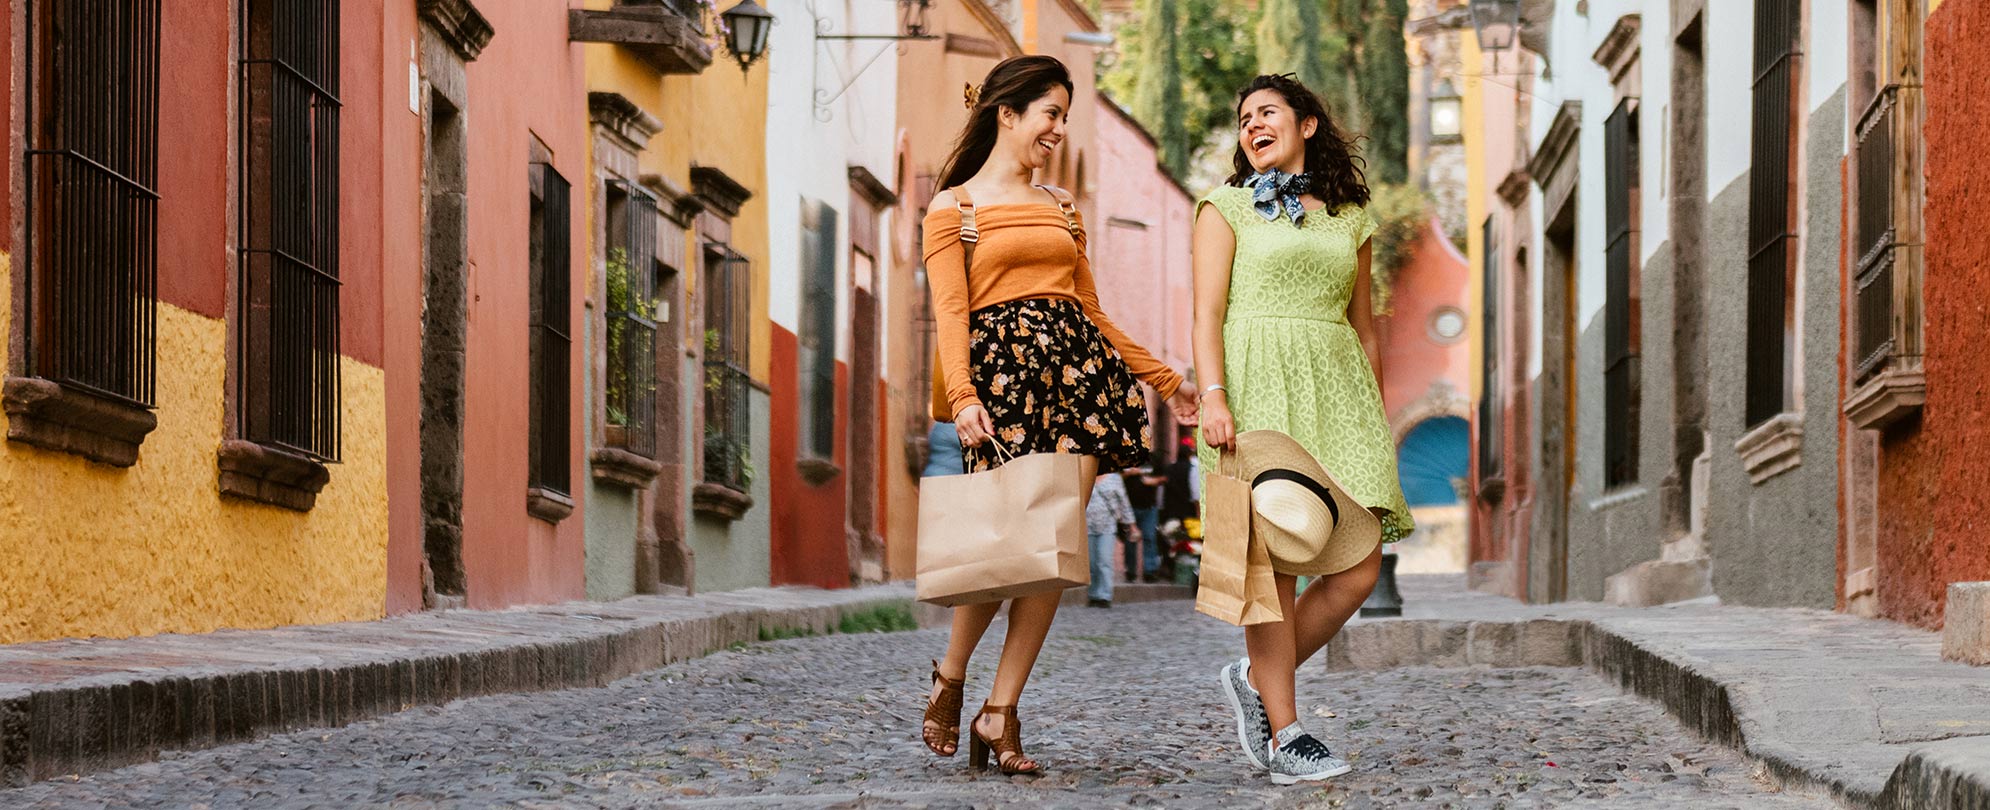 Two women walking down a cobble stone street. 